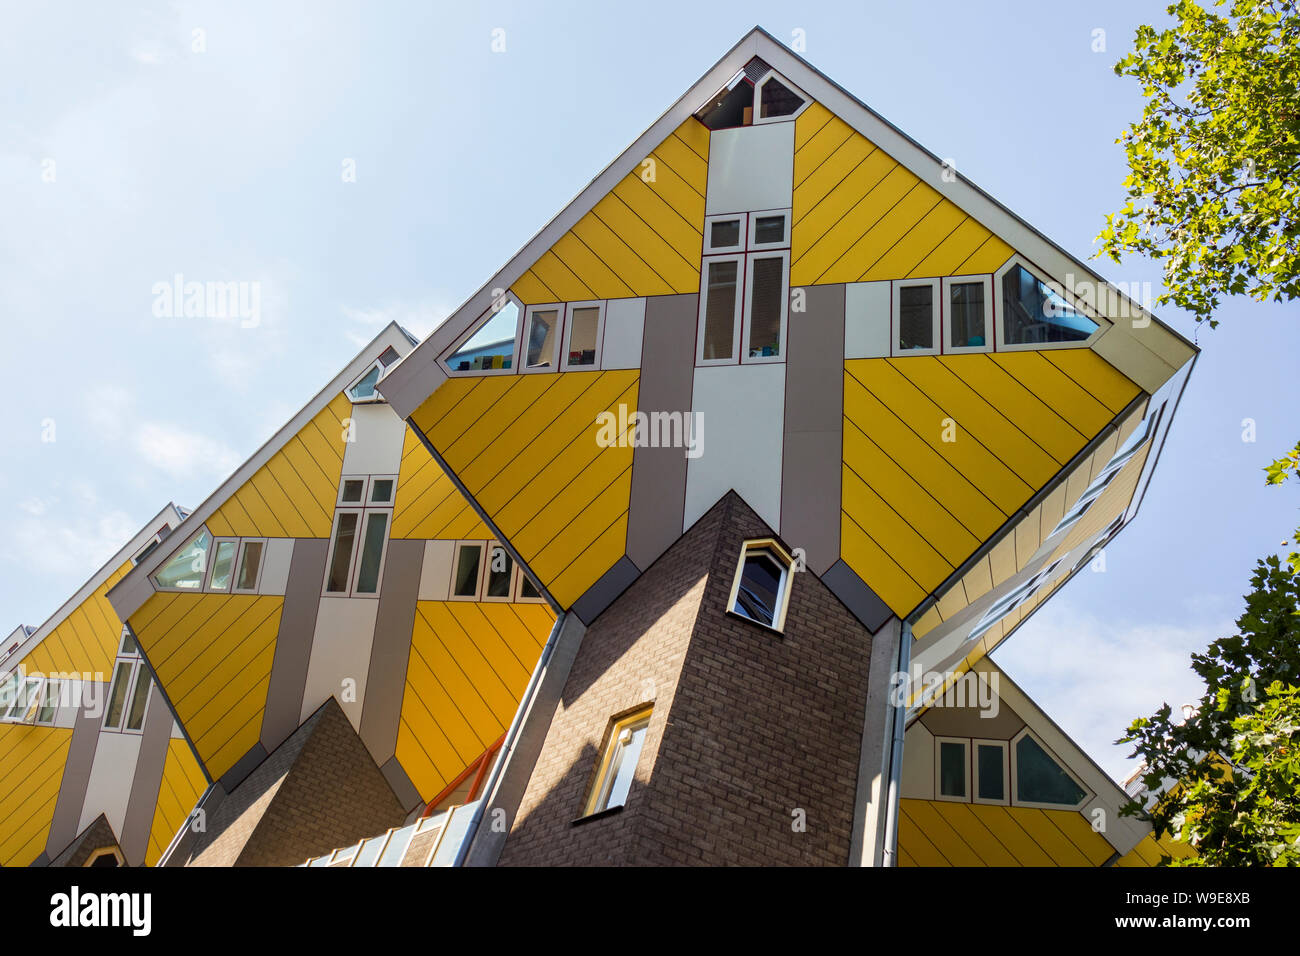 Rotterdam, Pays-Bas - 30 juillet 2019 : Des maisons cube à Rotterdam conçu par l'architecte Piet Blom Banque D'Images